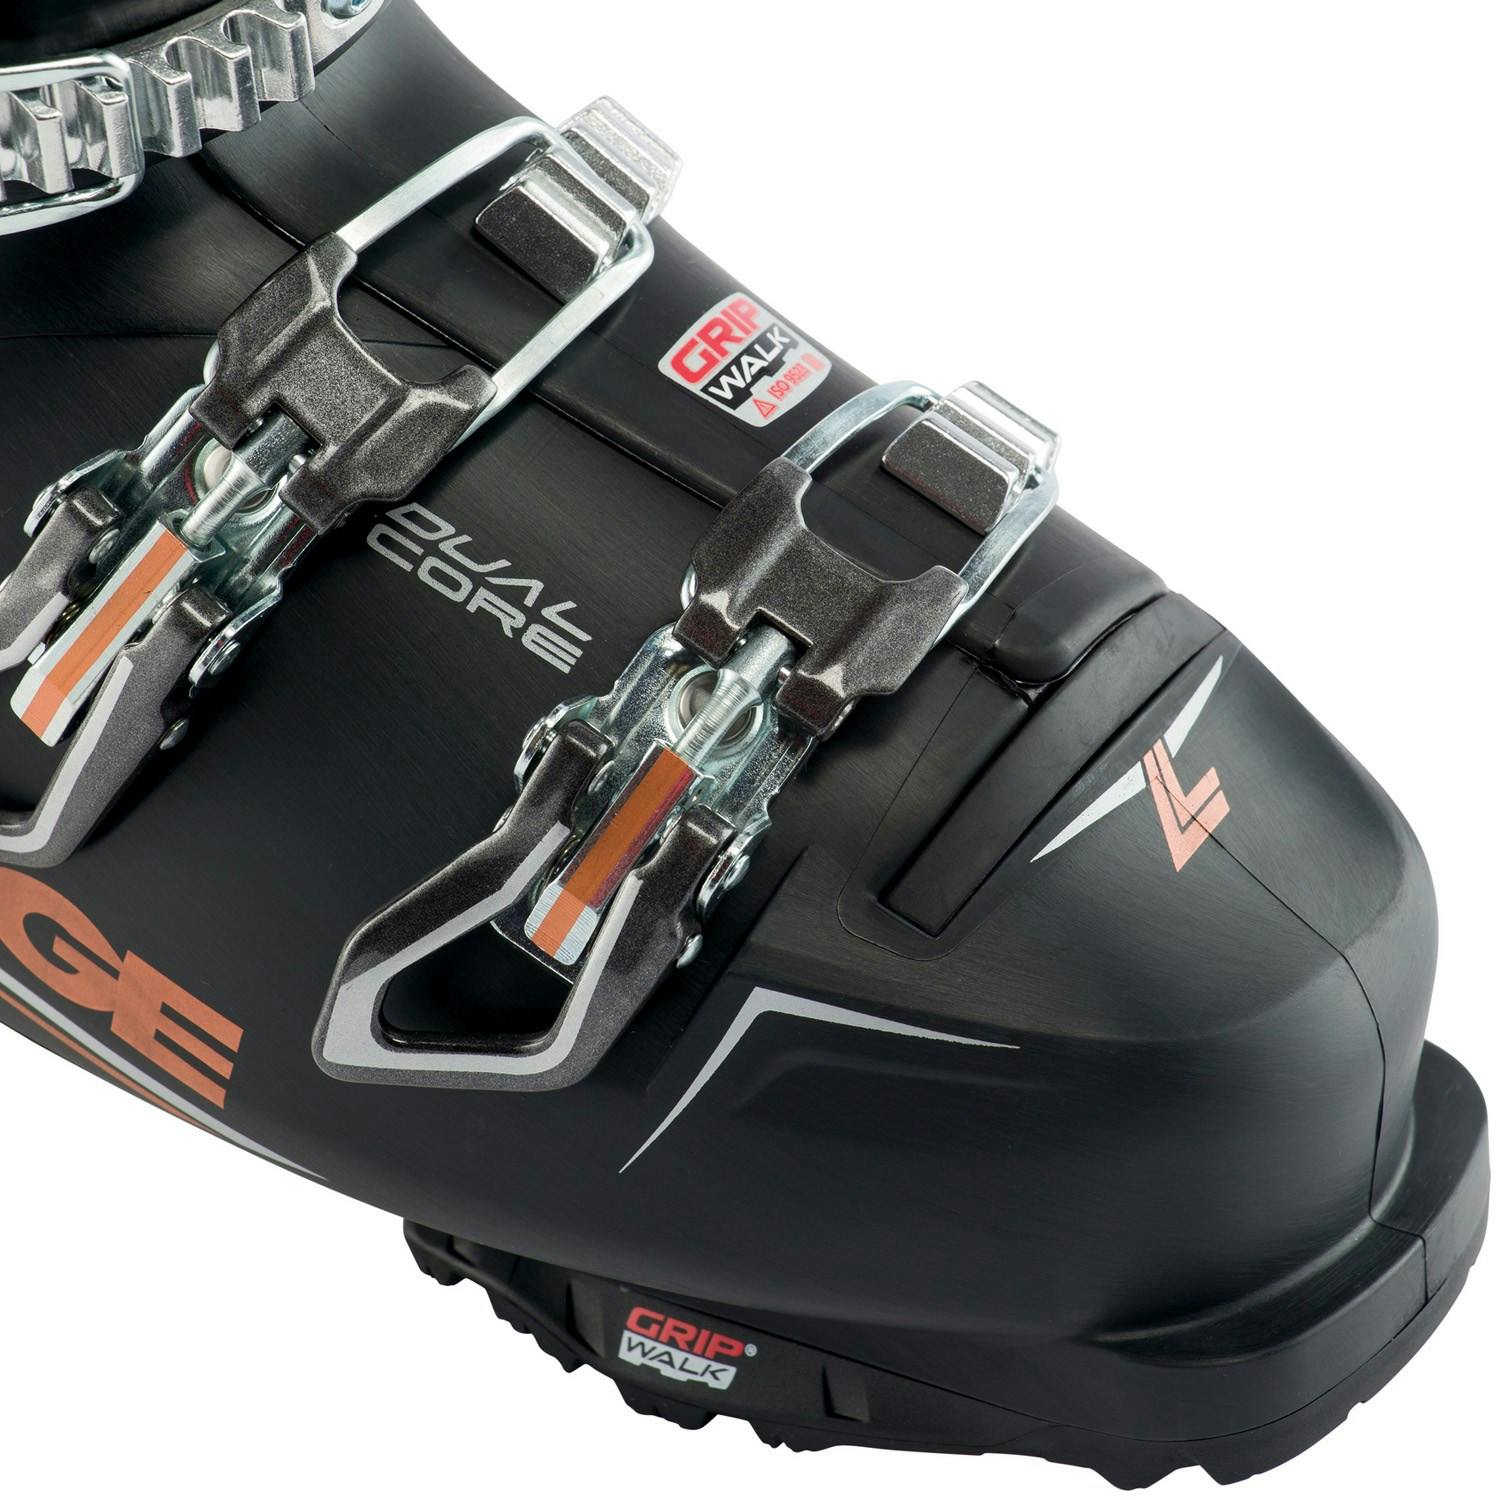 Lange RX 90 LV GW Women's Ski Boots 2023